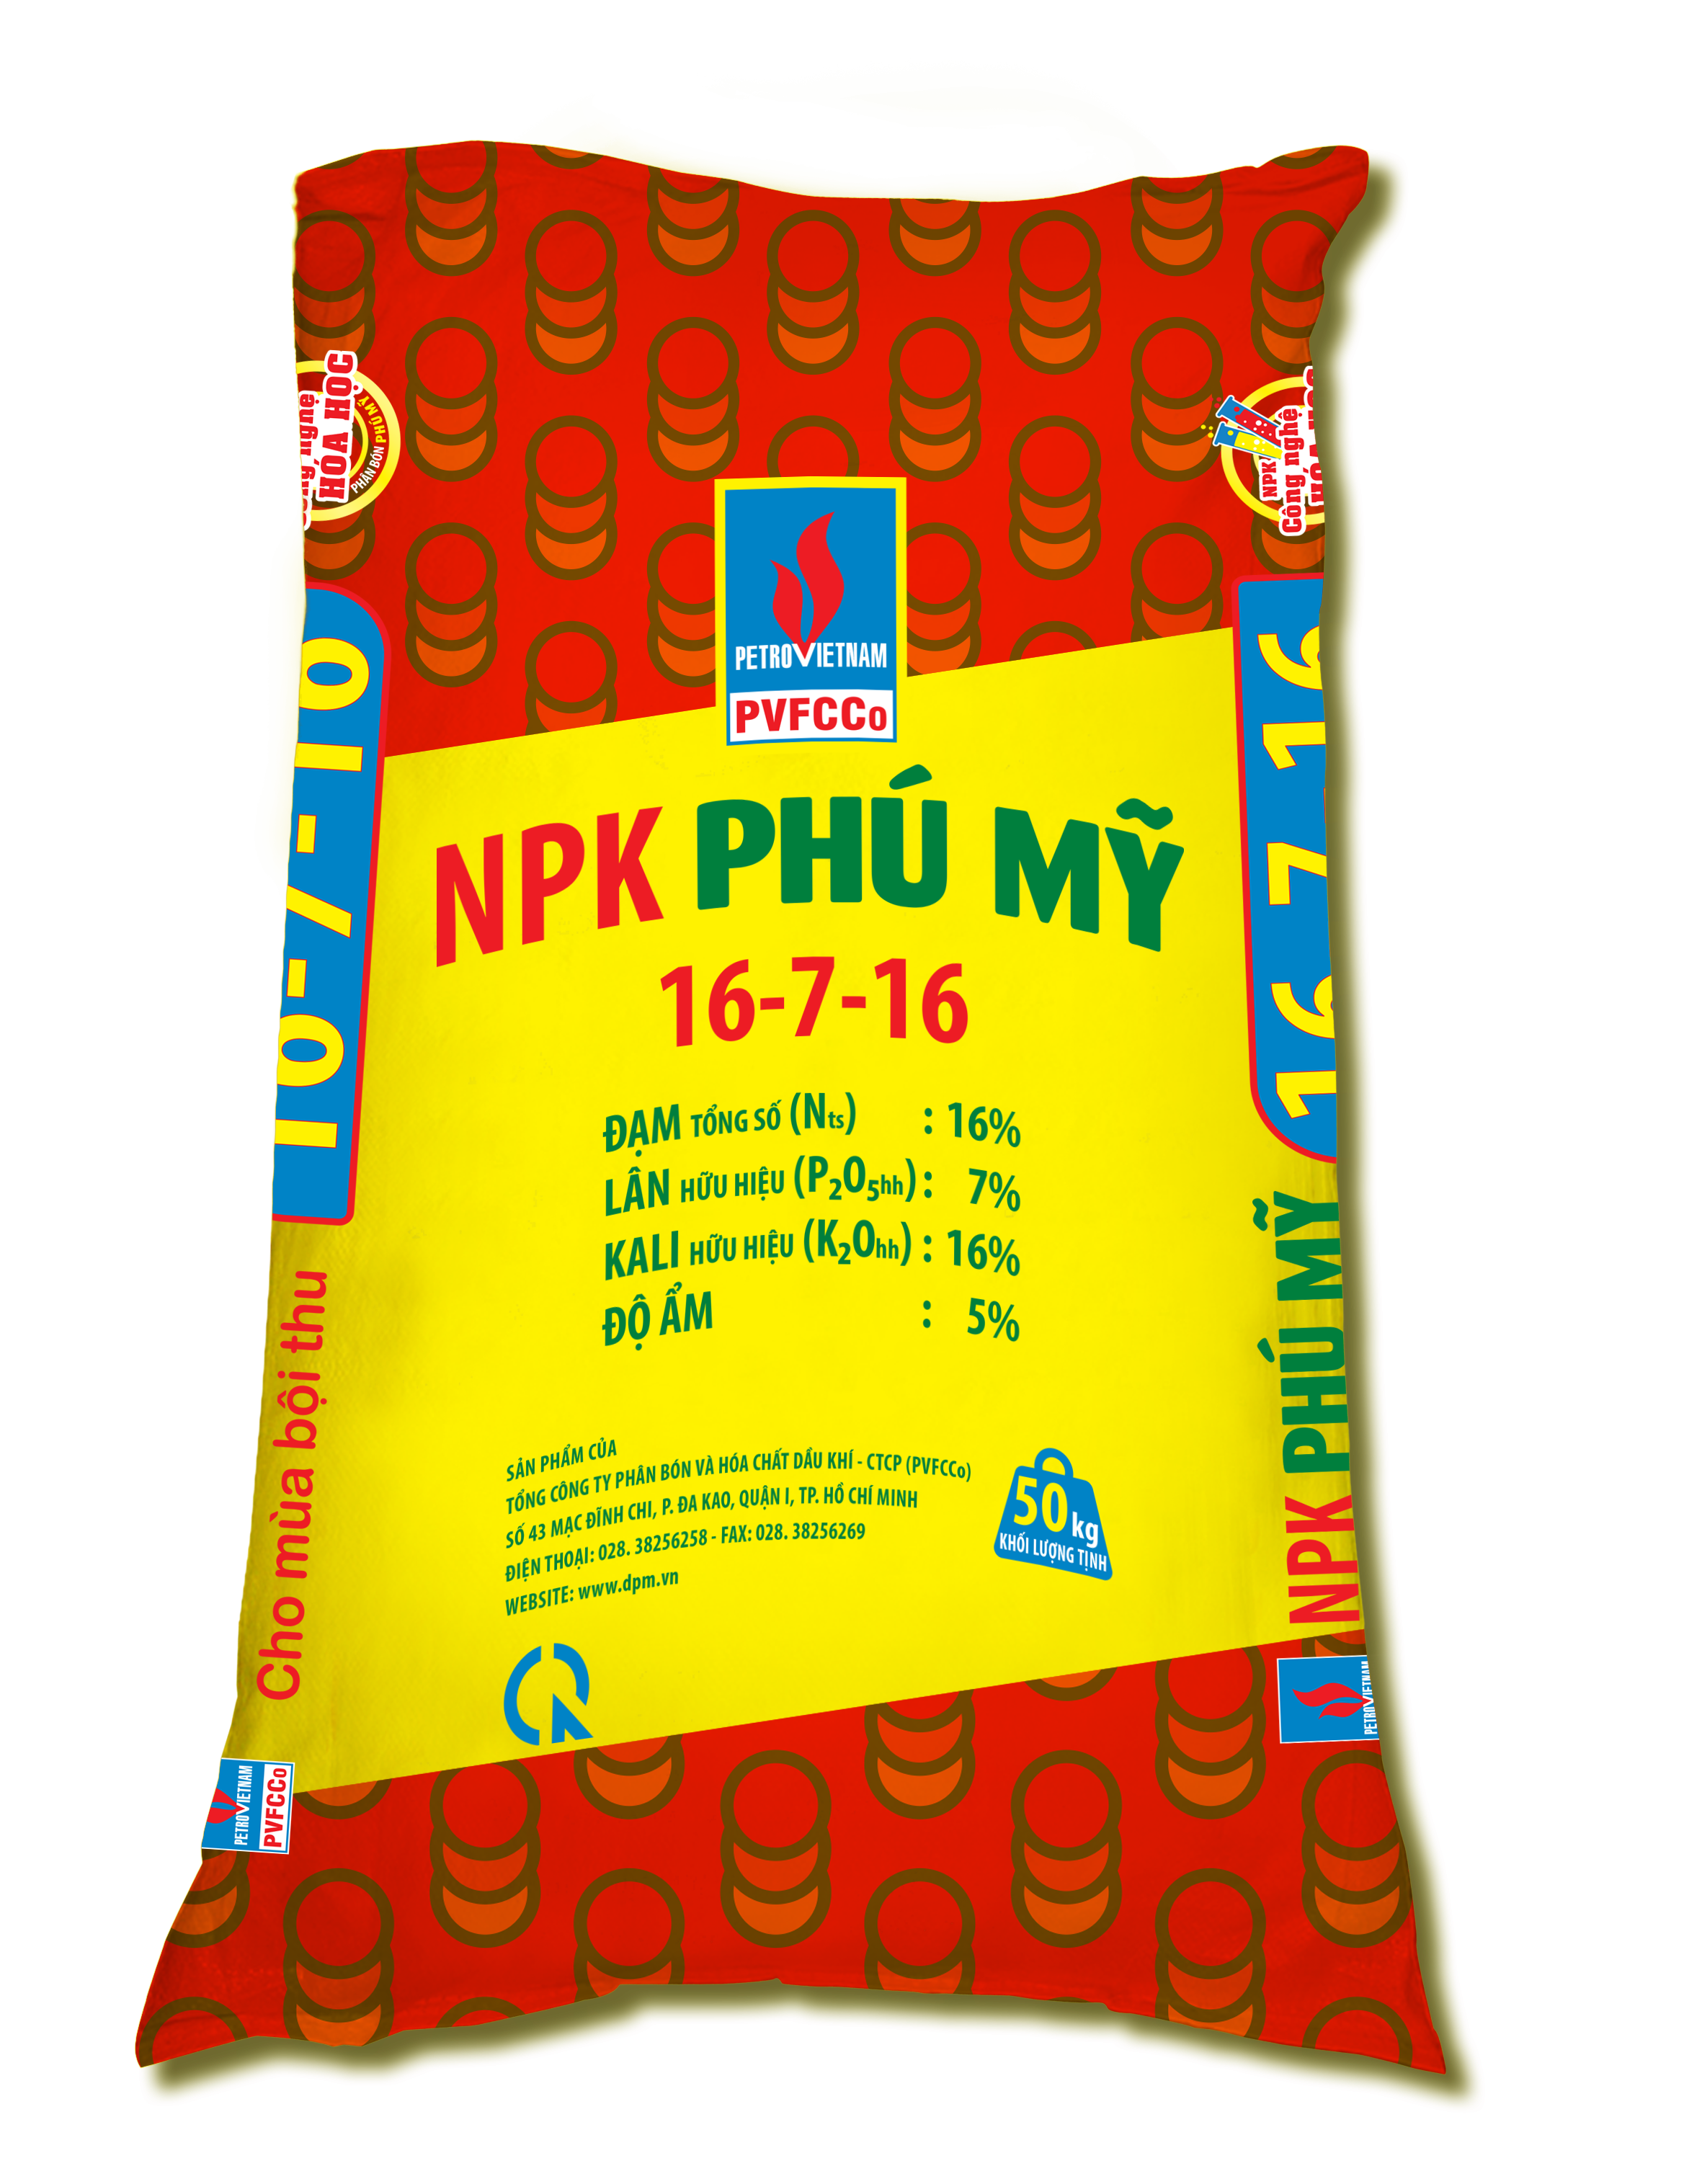 NPK Phu My 16-7-16